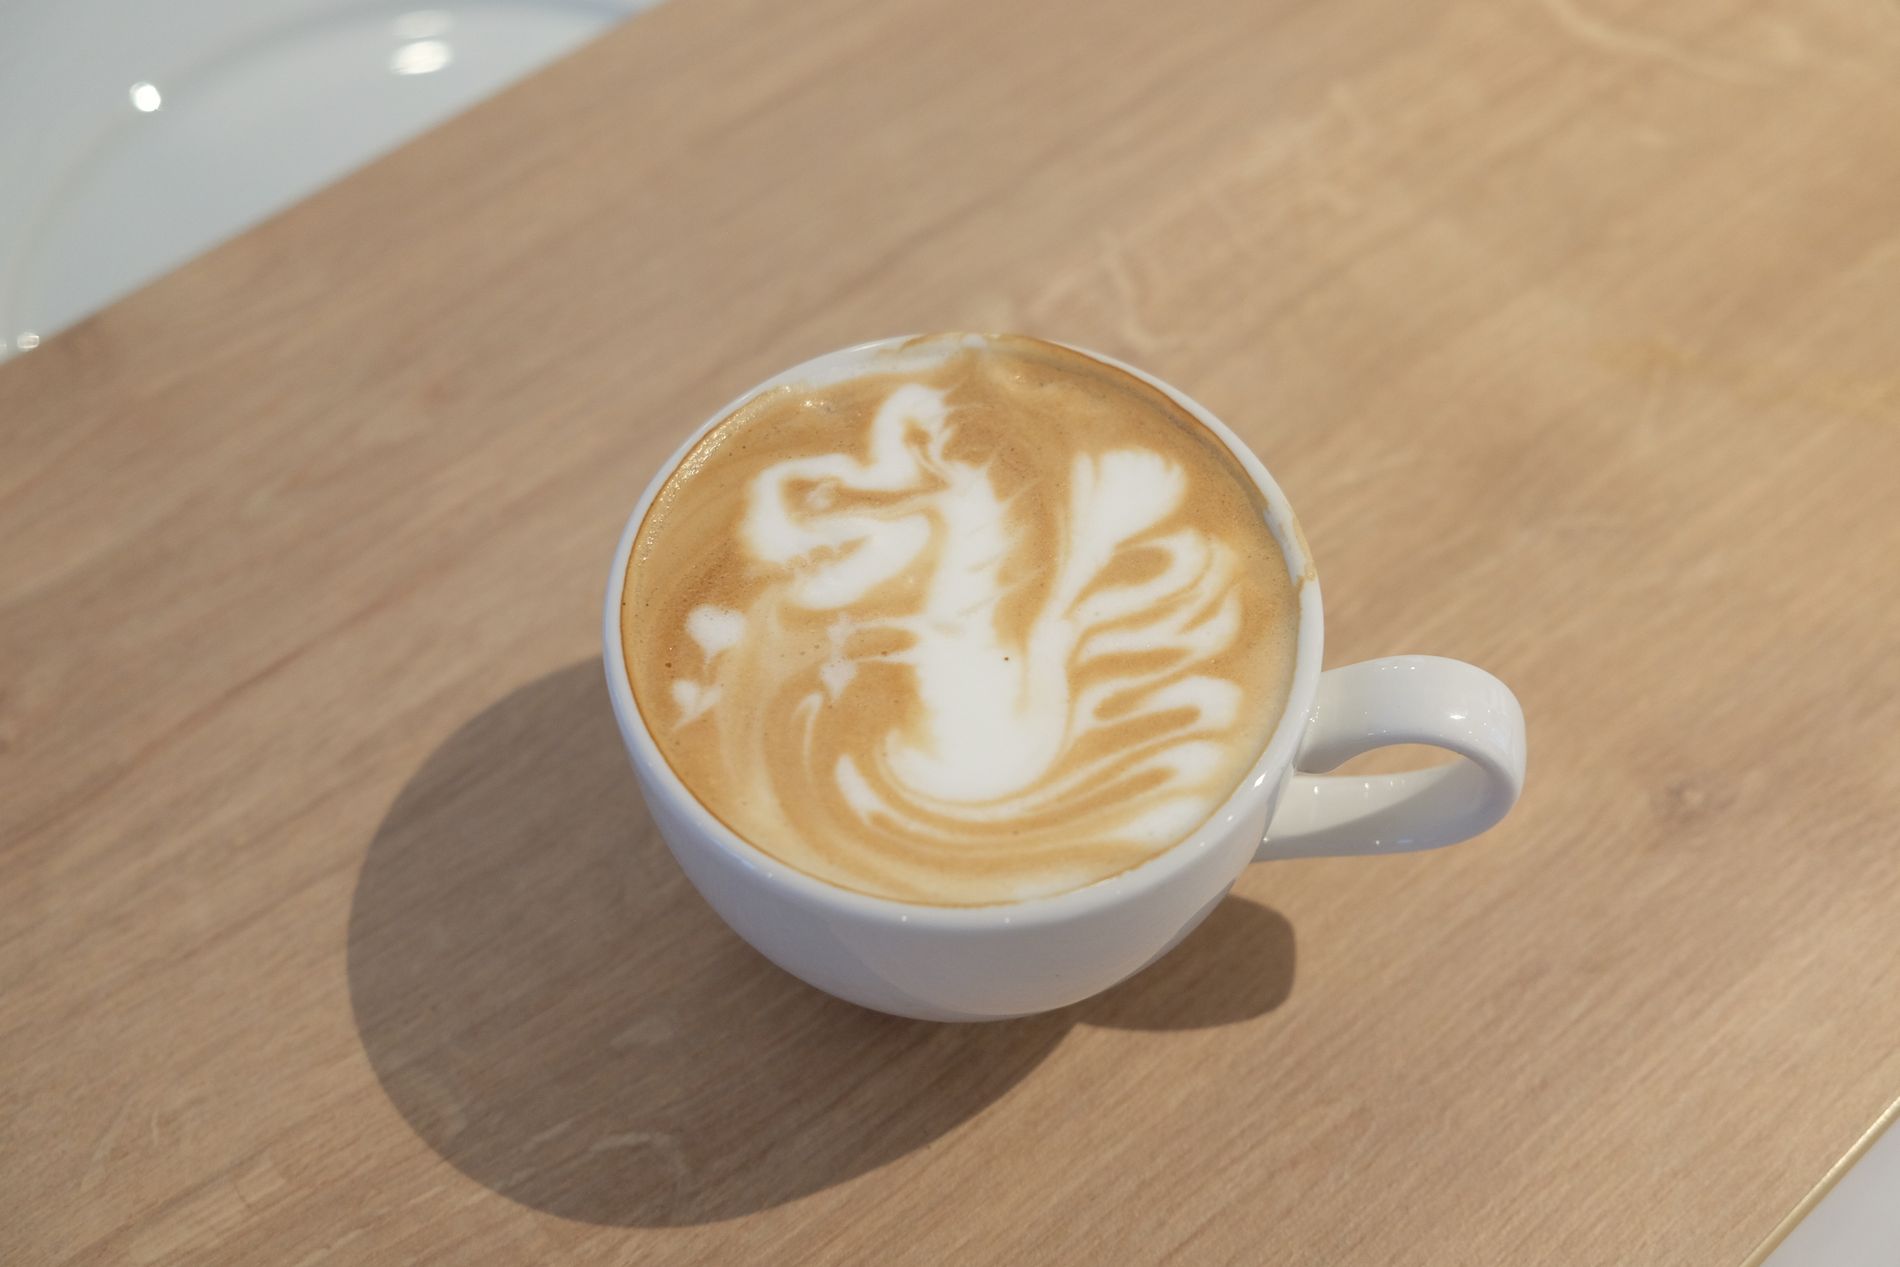 Ser du hva mønsteret i kaffe skal forestille? 